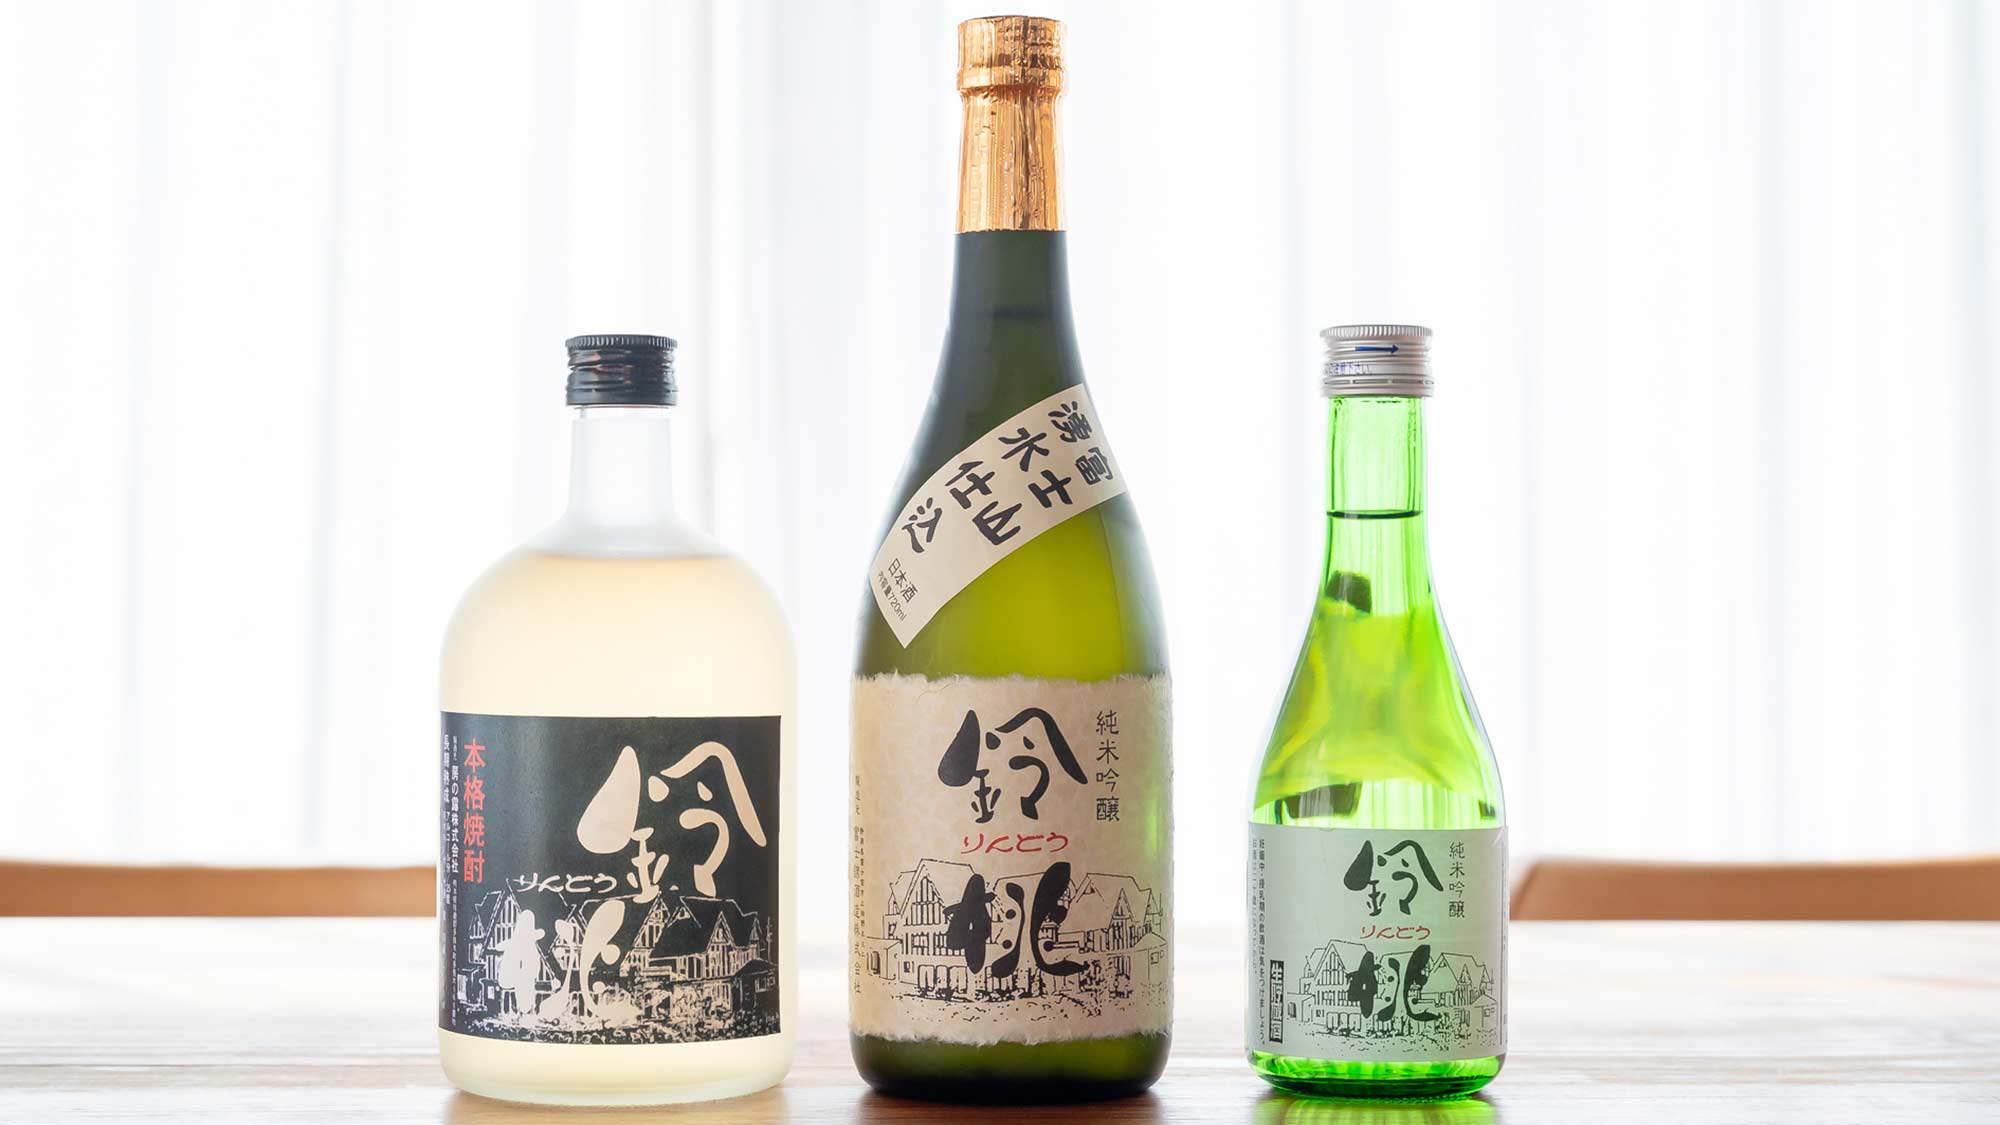 【鈴桃オリジナル酒類】焼酎や純米吟醸酒などオリジナルのお酒をご用意しております。